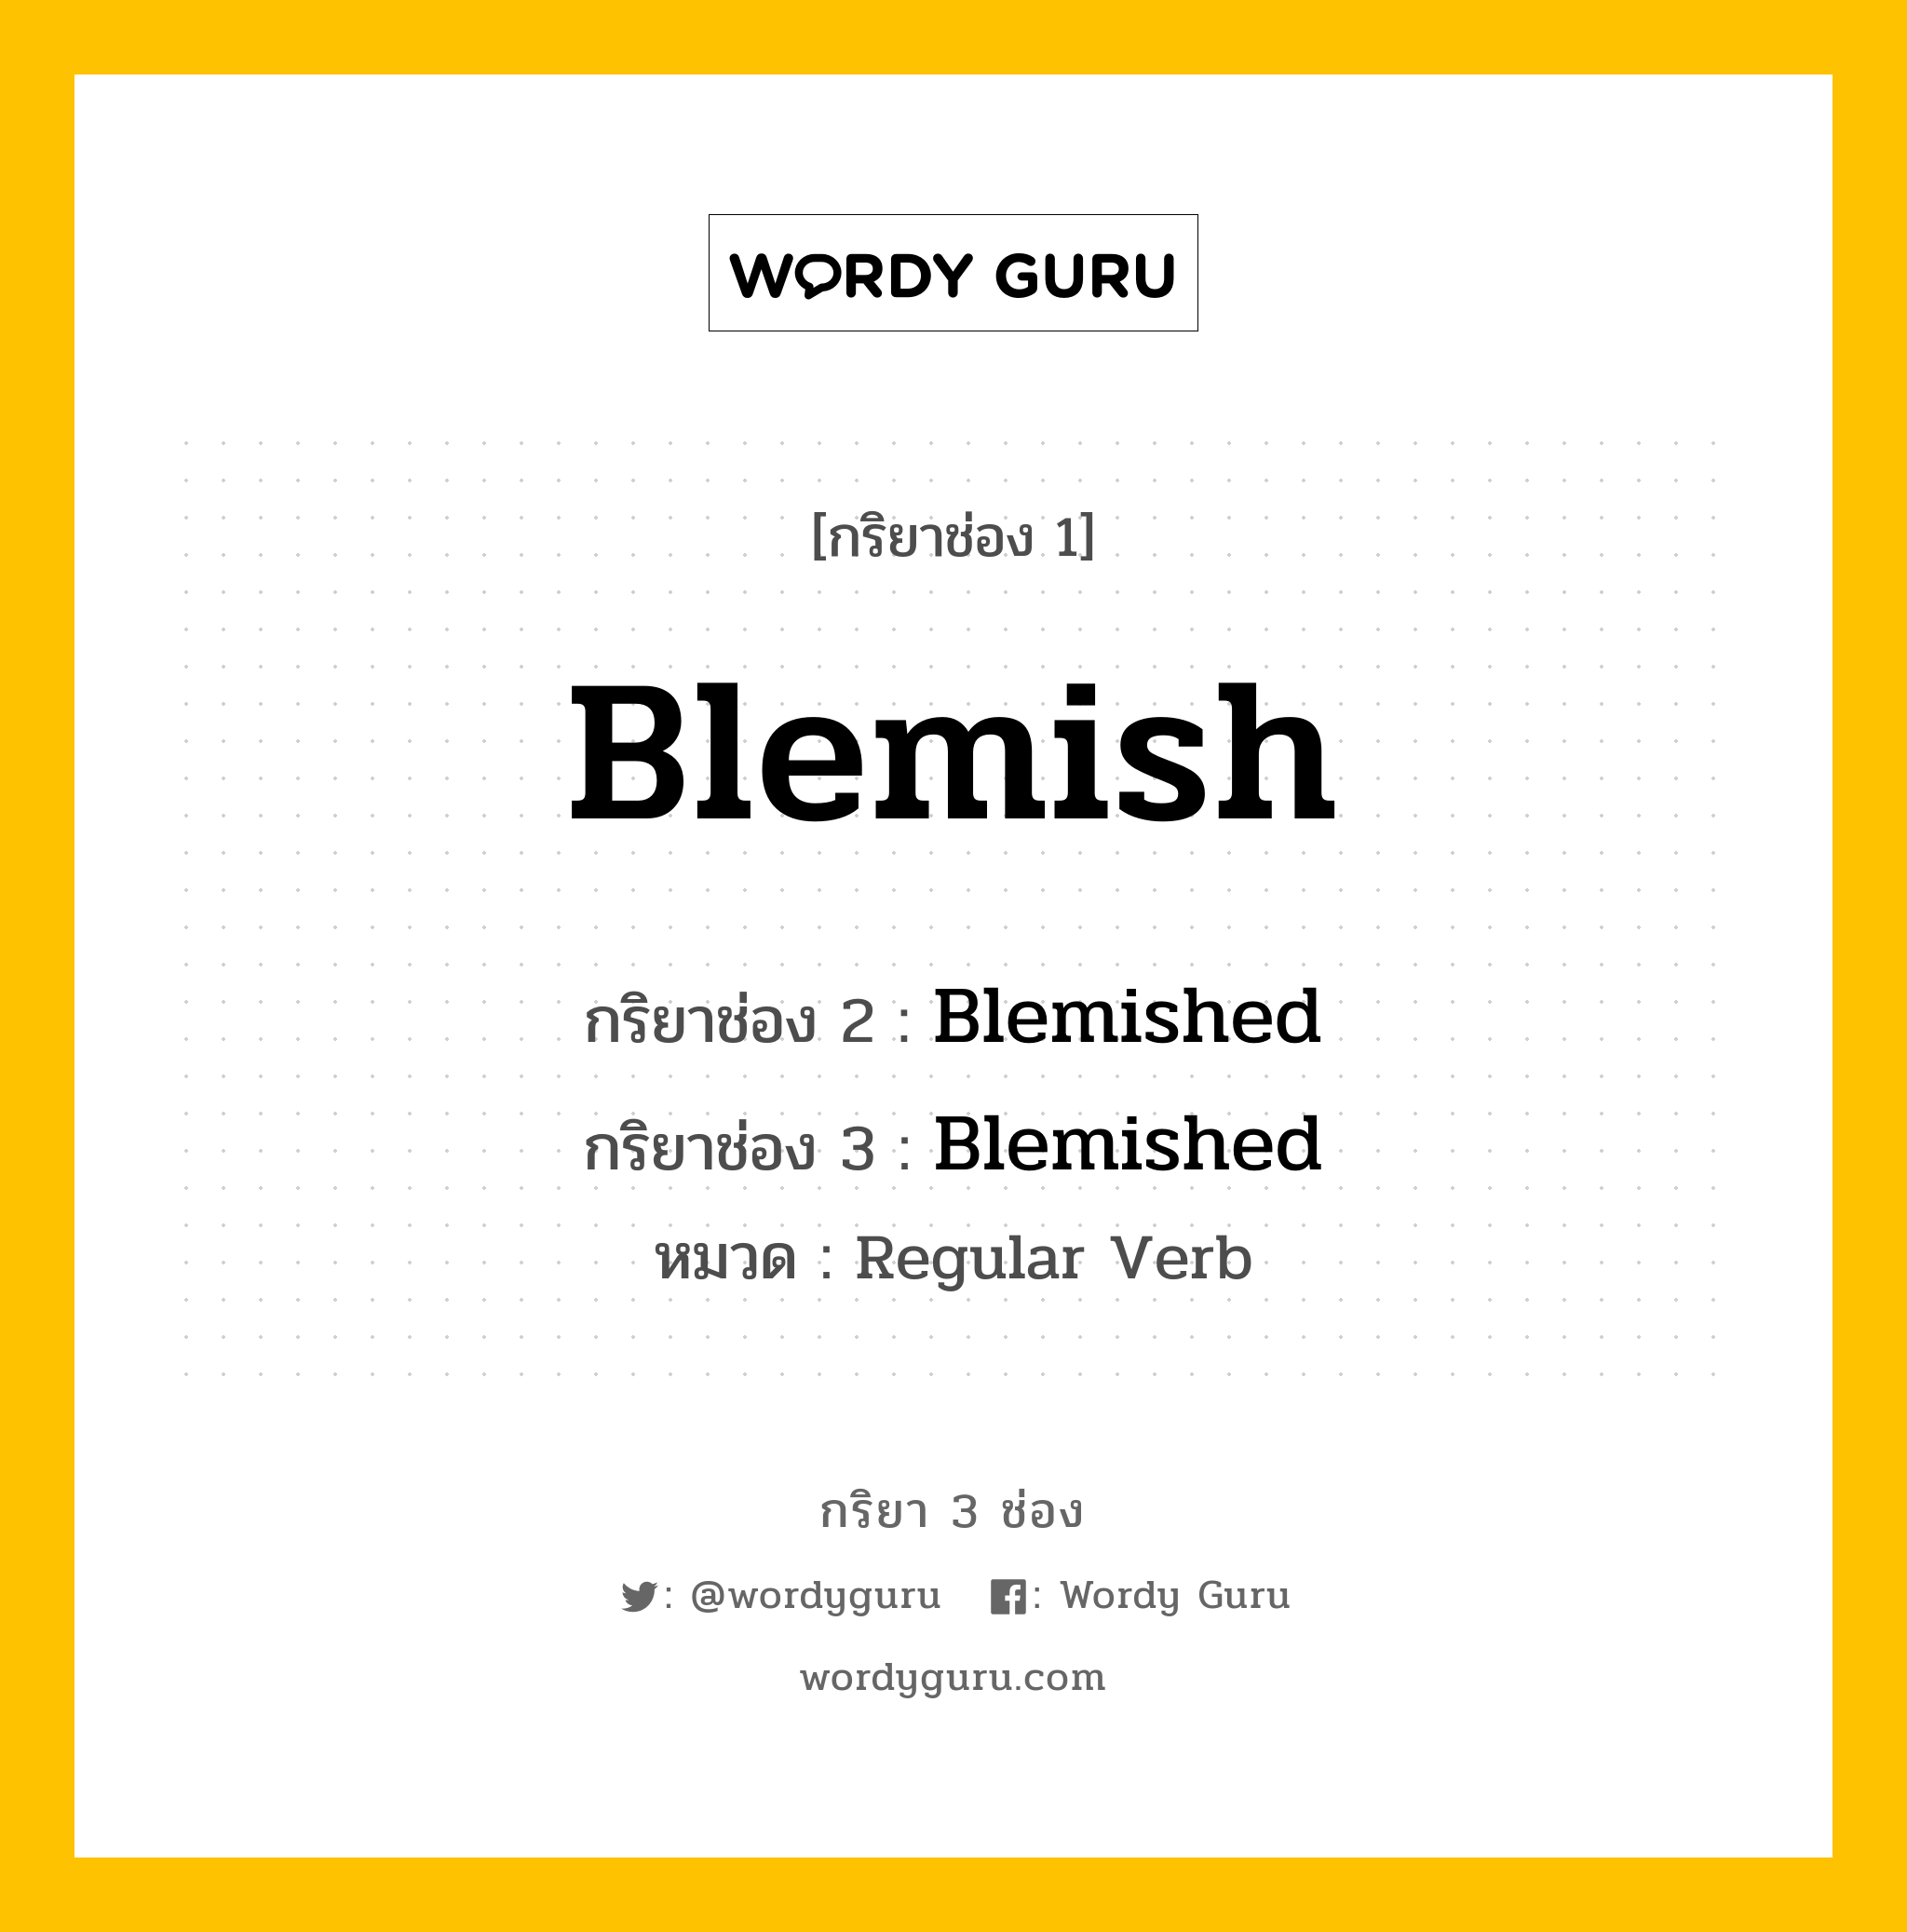 กริยา 3 ช่อง: Blemish ช่อง 2 Blemish ช่อง 3 คืออะไร, กริยาช่อง 1 Blemish กริยาช่อง 2 Blemished กริยาช่อง 3 Blemished หมวด Regular Verb หมวด Regular Verb